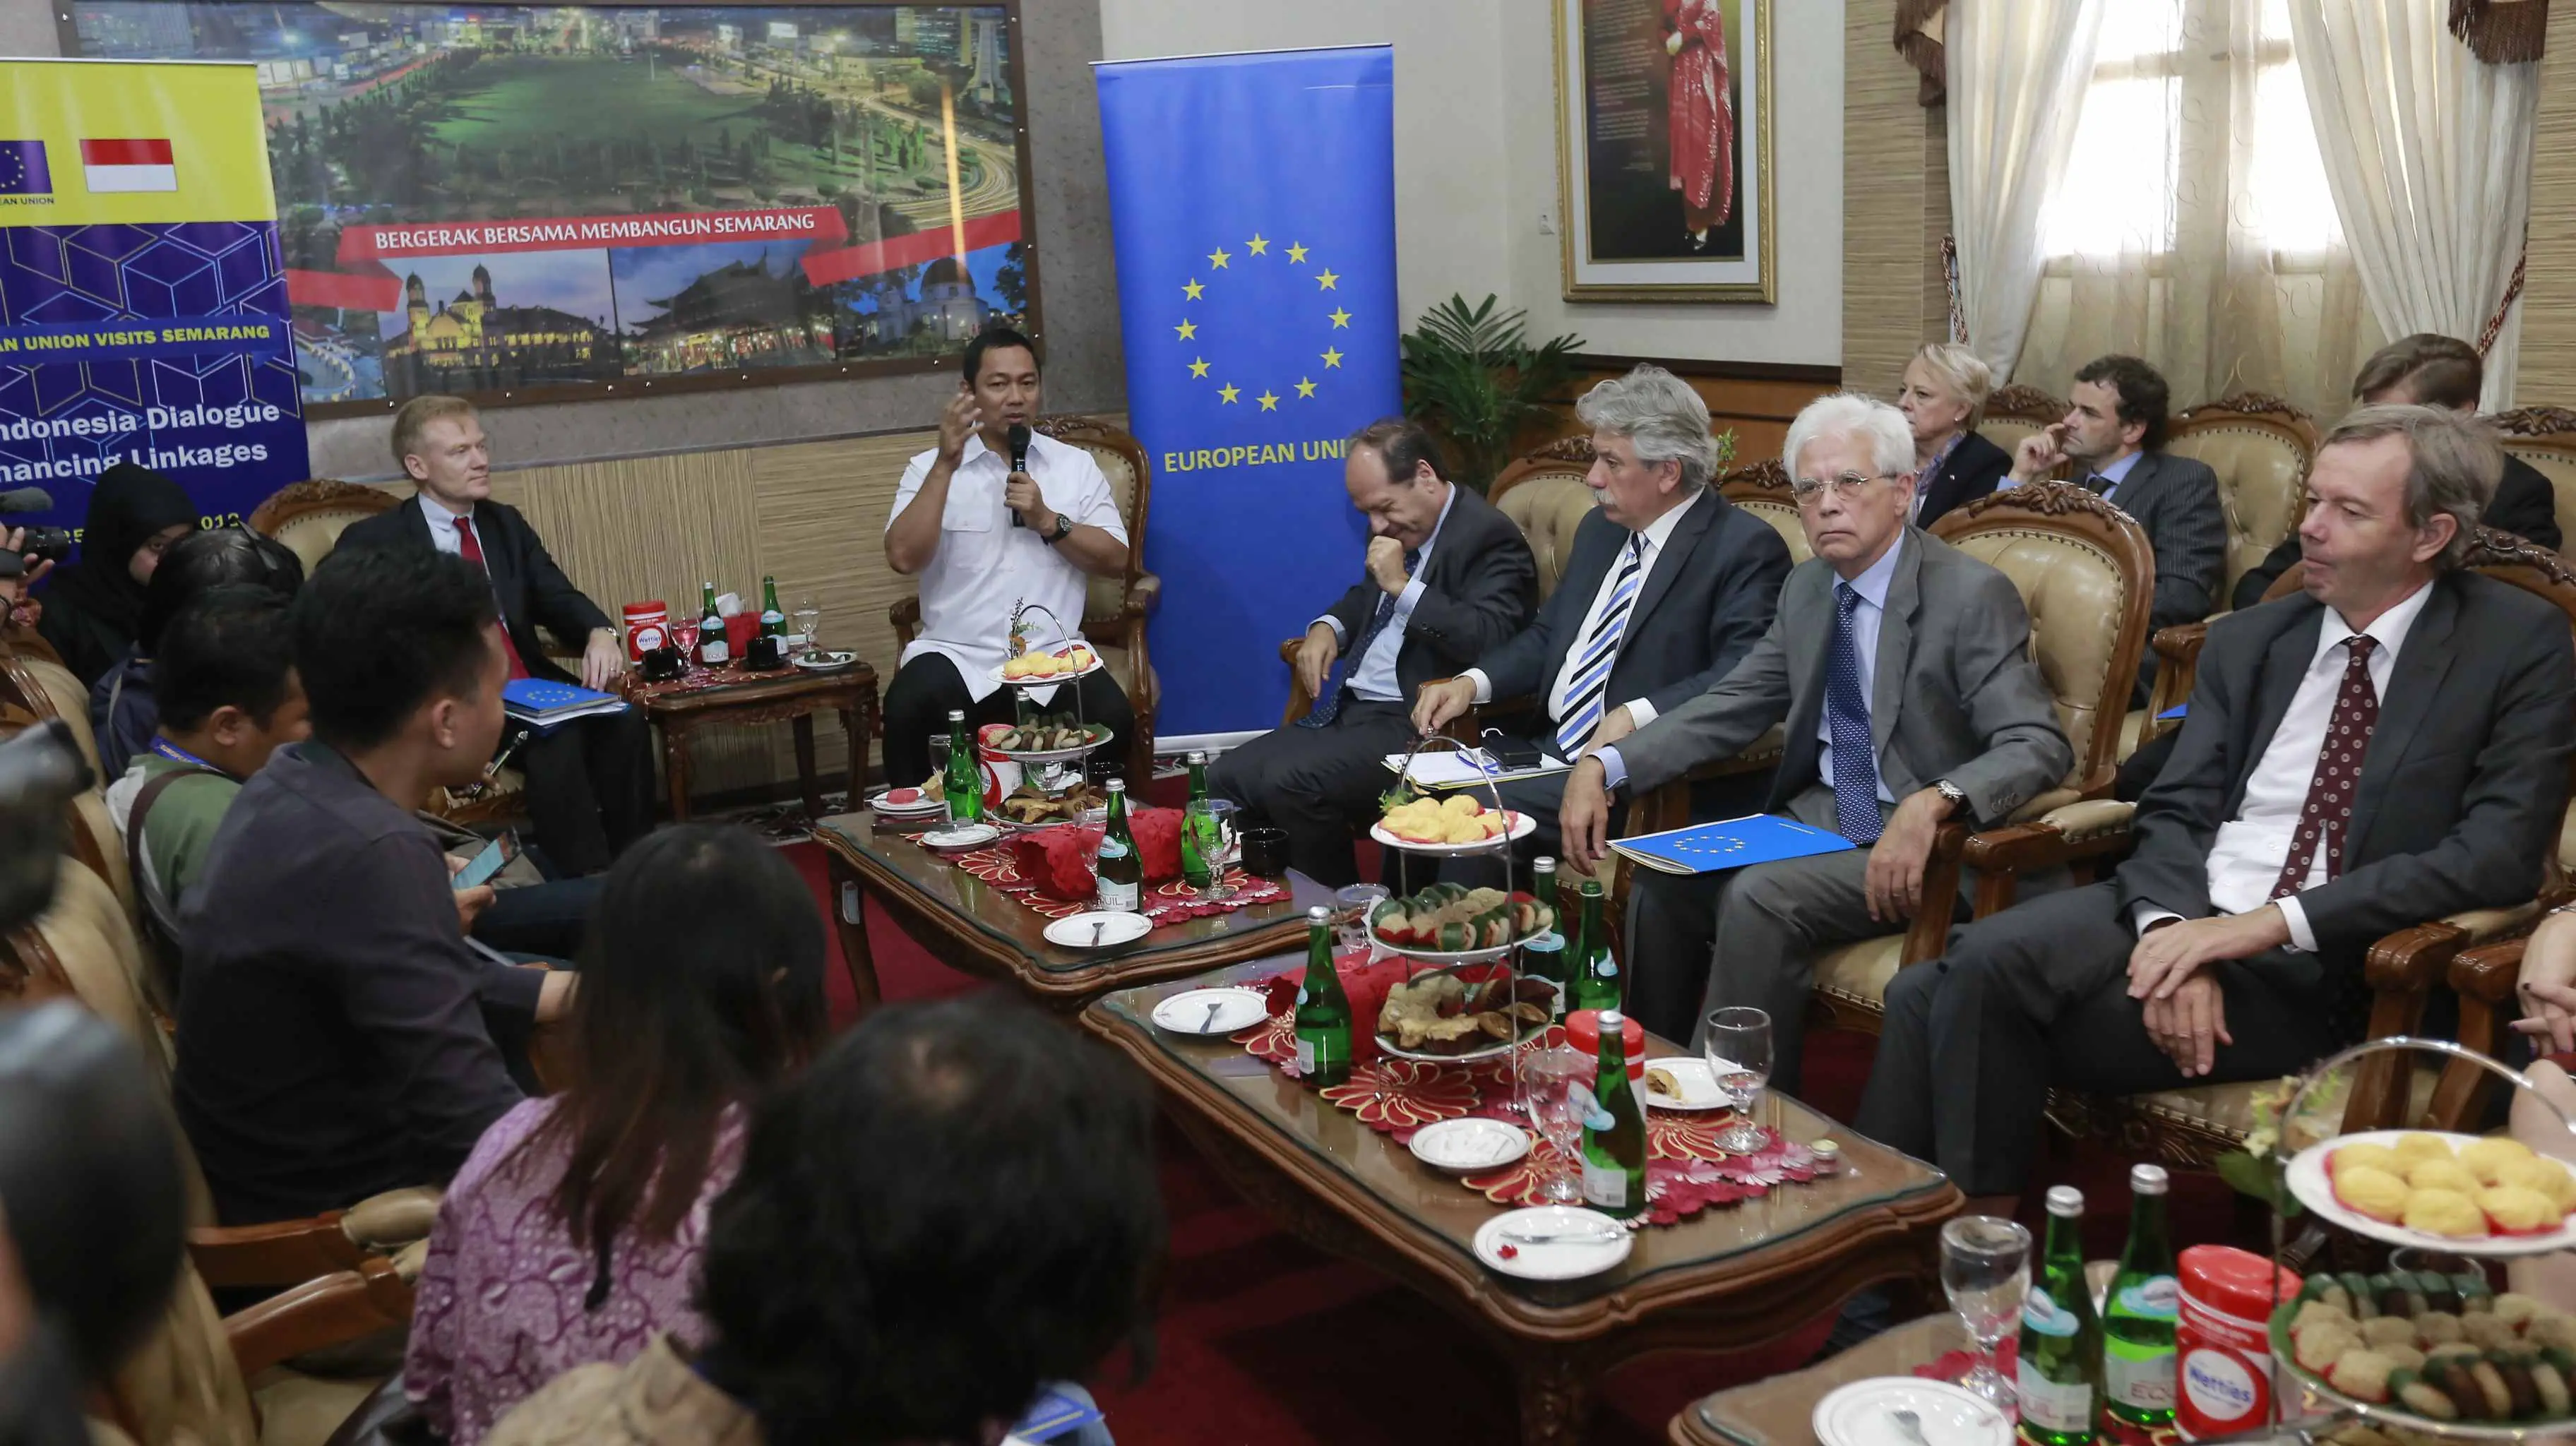 Wali Kota Semarang Hendrar Prihadi memaparkan program Outstanding Semarang di depan 14 perwakilan negara uni Eropa. (foto: Liputan6.com/felek wahyu)